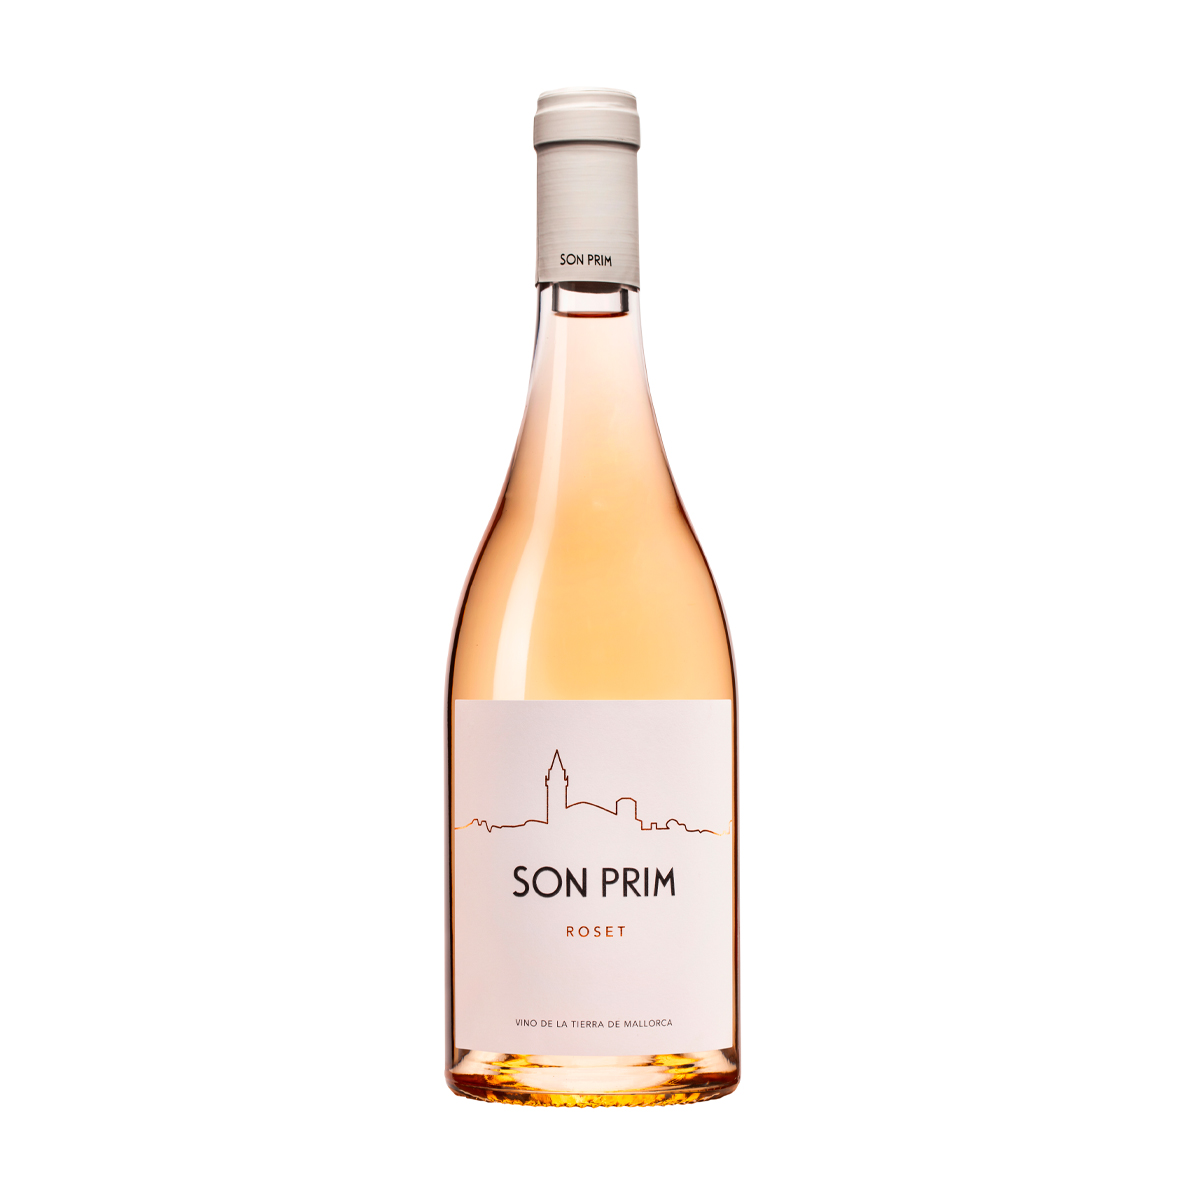 Vino rosado de Mallorca, botella de SON PRIM Roset